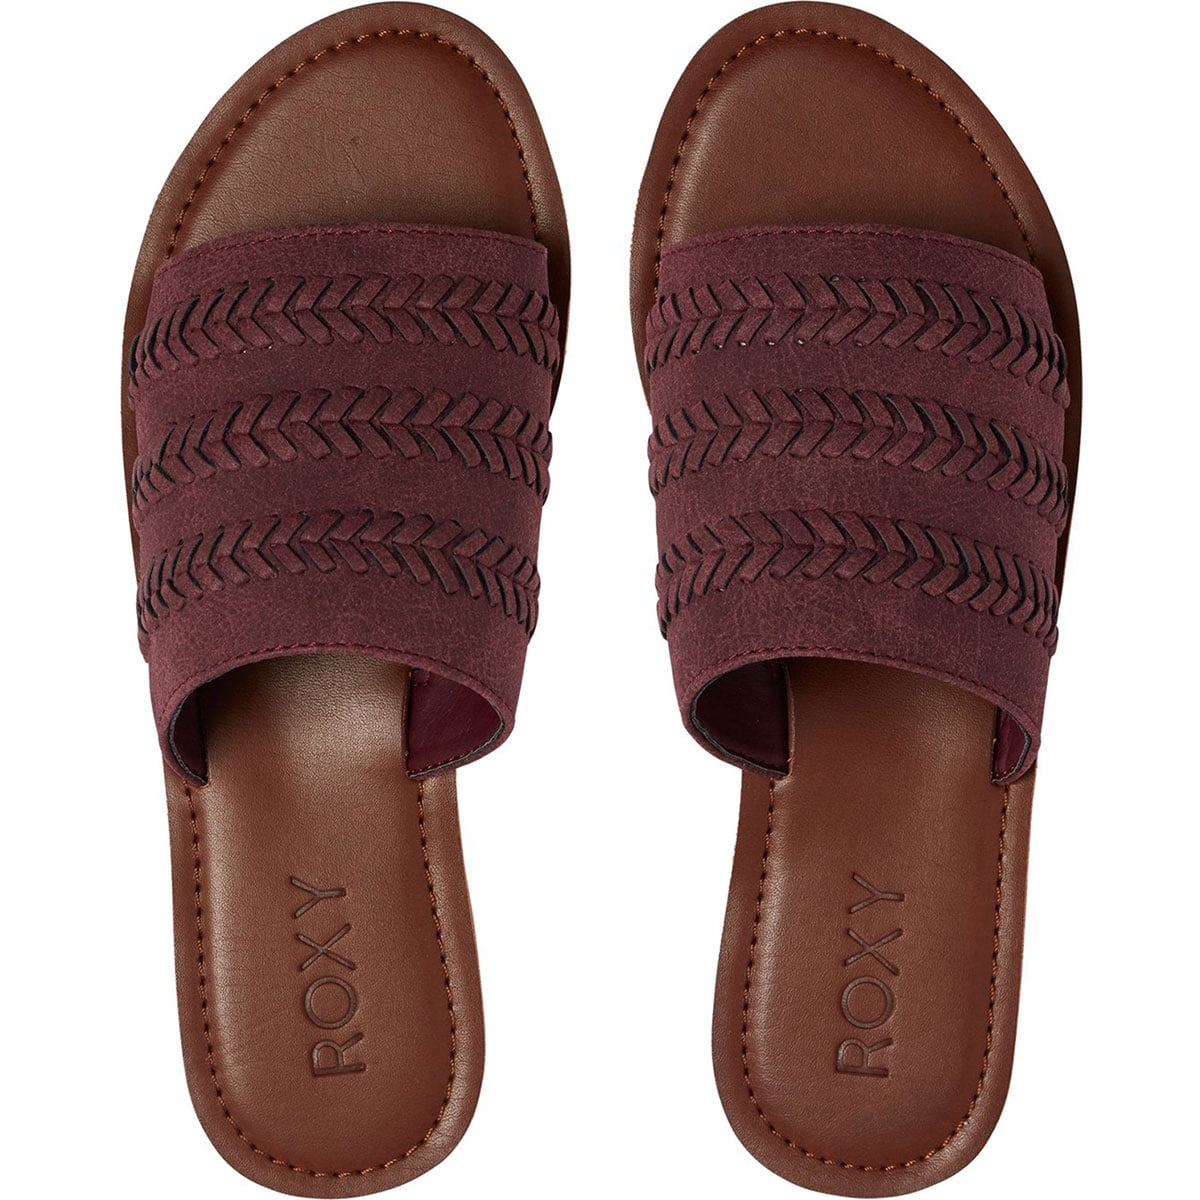 roxy kaia sandals